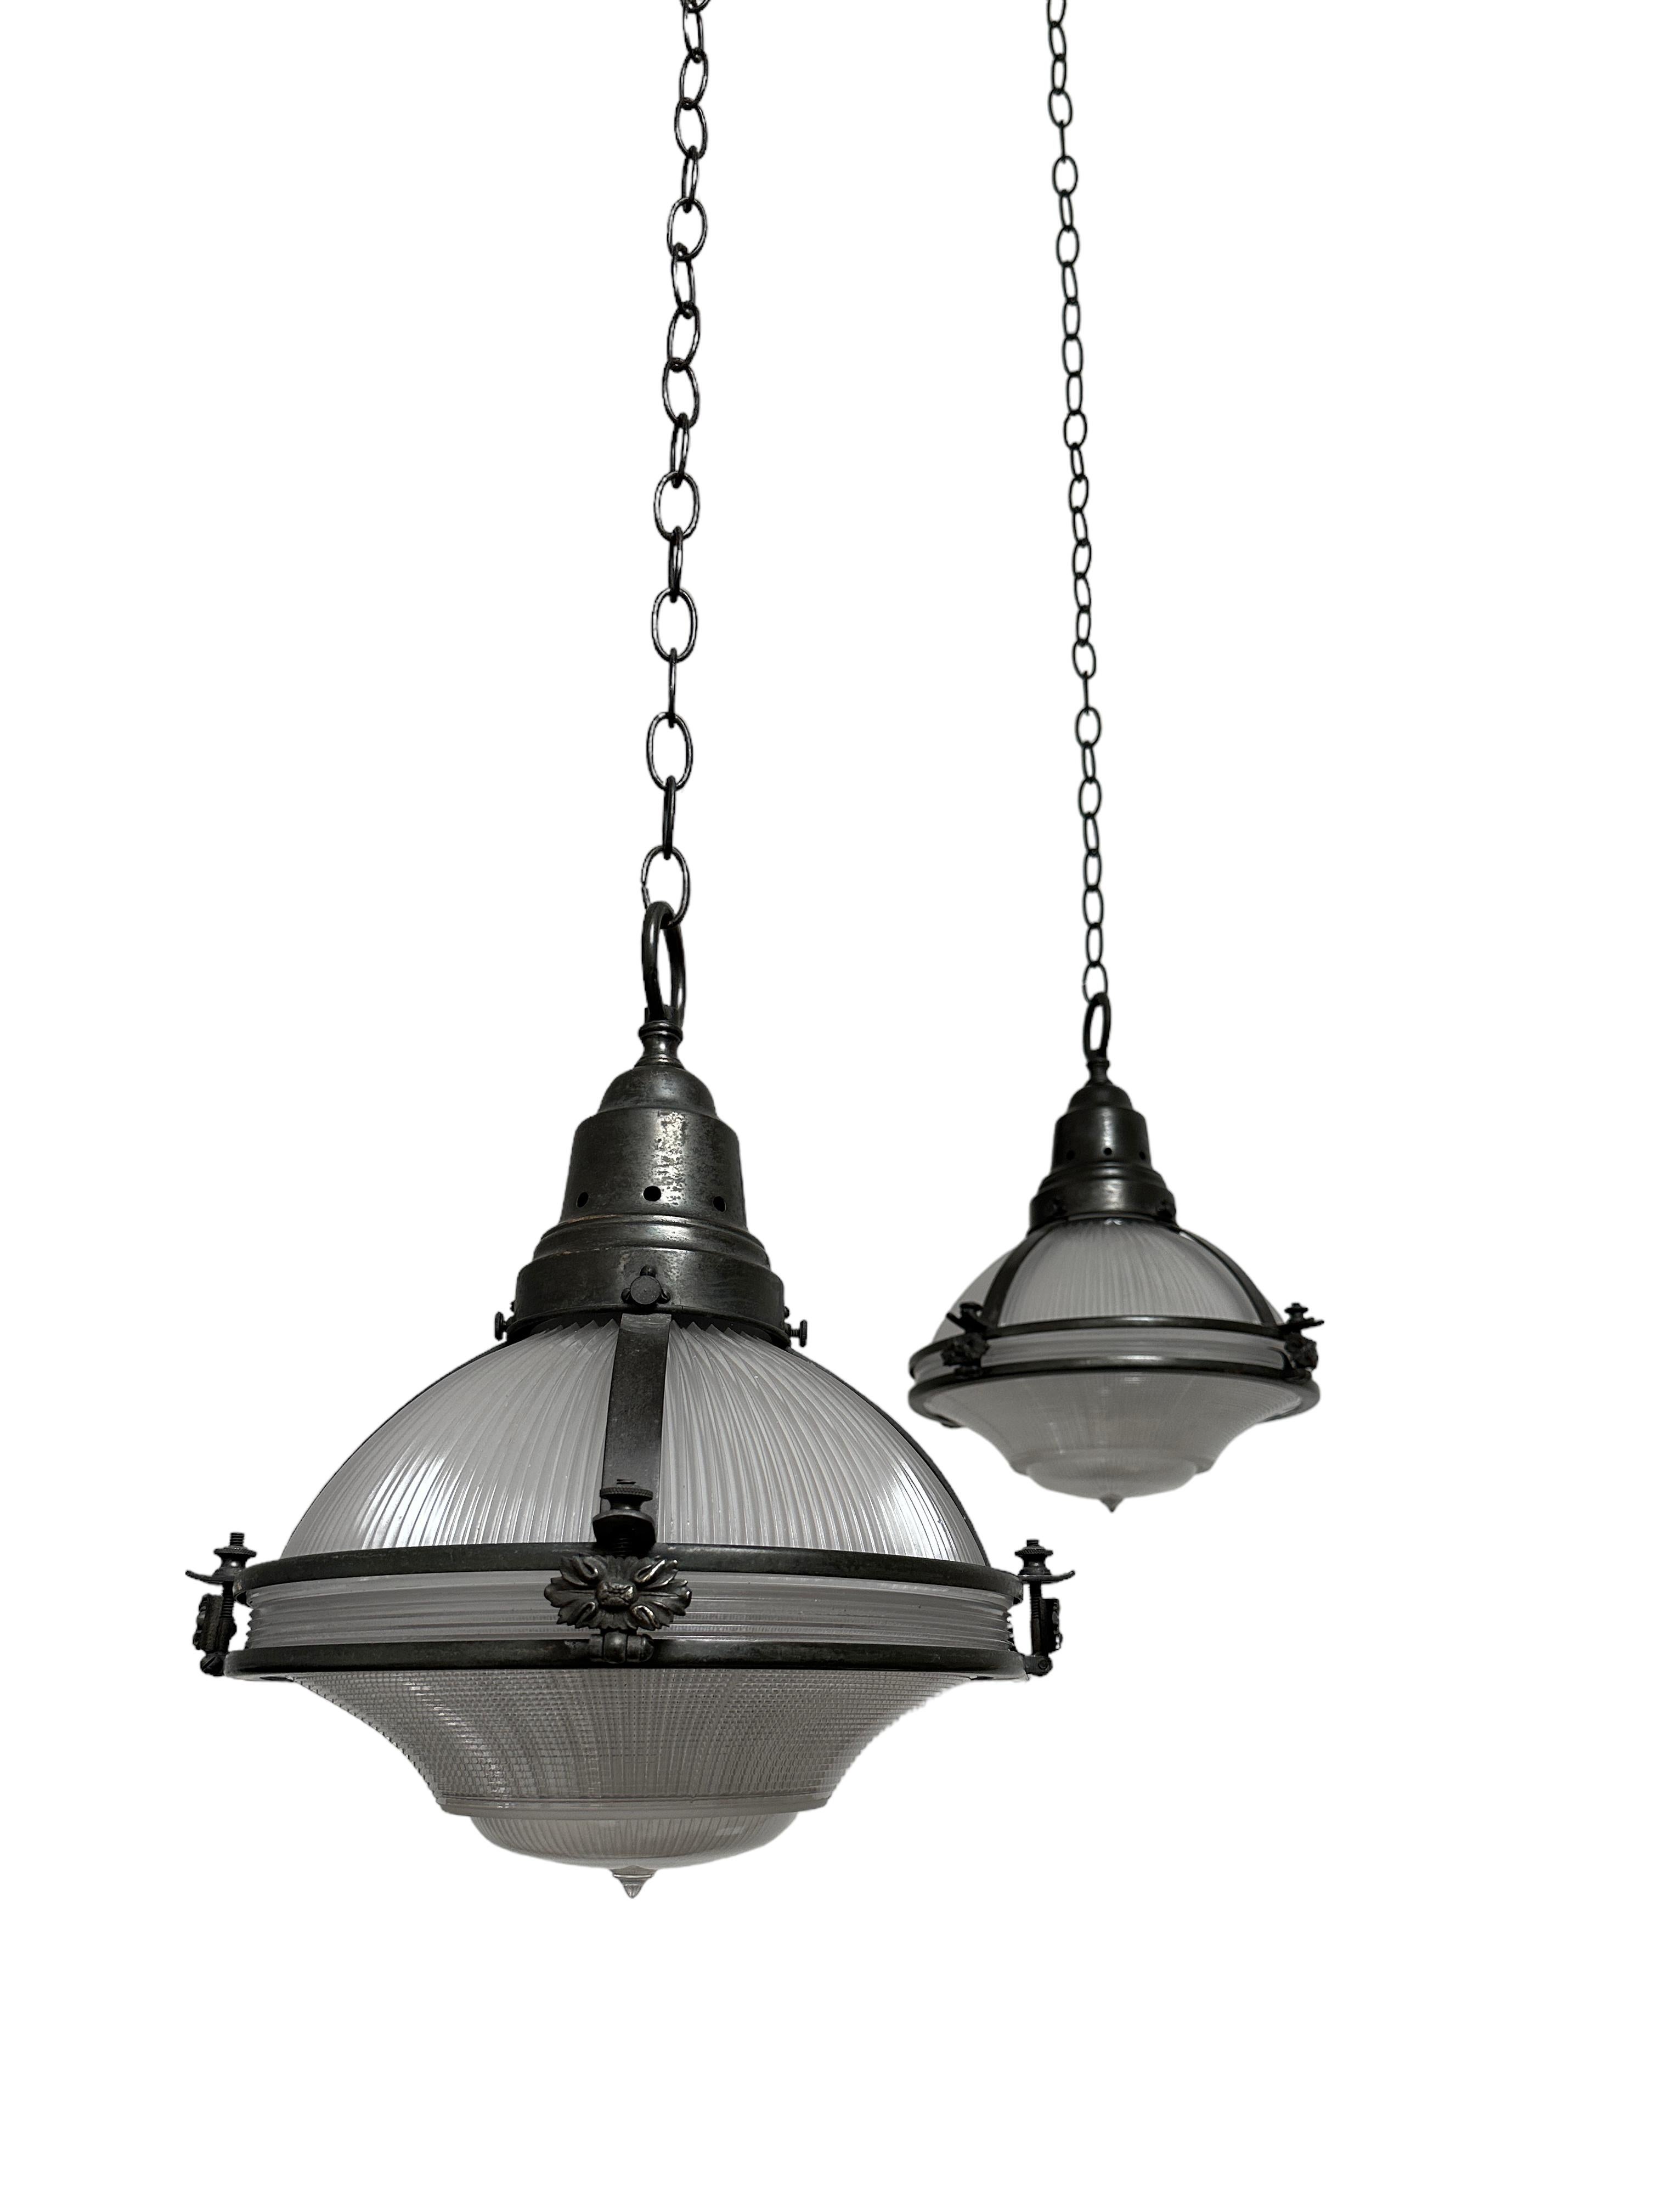 Antique Vintage Industrial Holophane Caged Glass Ceiling Pendants Lights Lantern 2